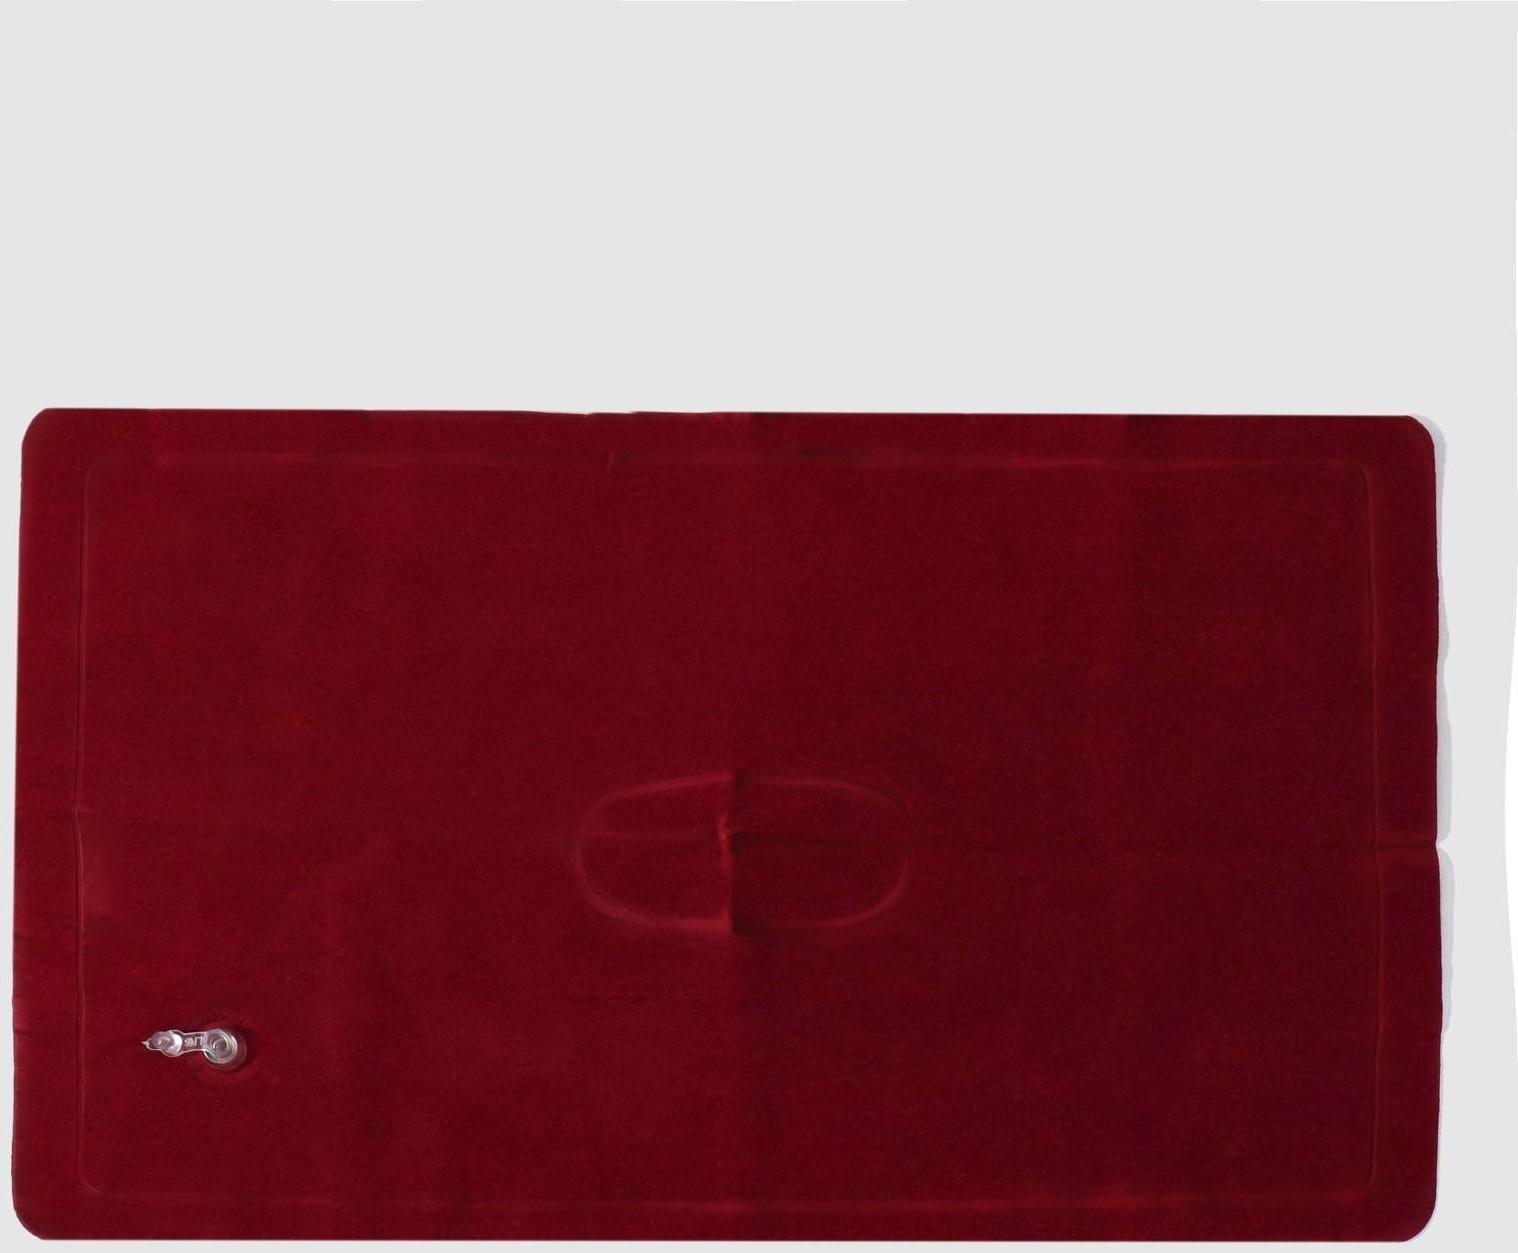 Подушка дорожная, надувная, 46 × 29 см, цвет МИКС